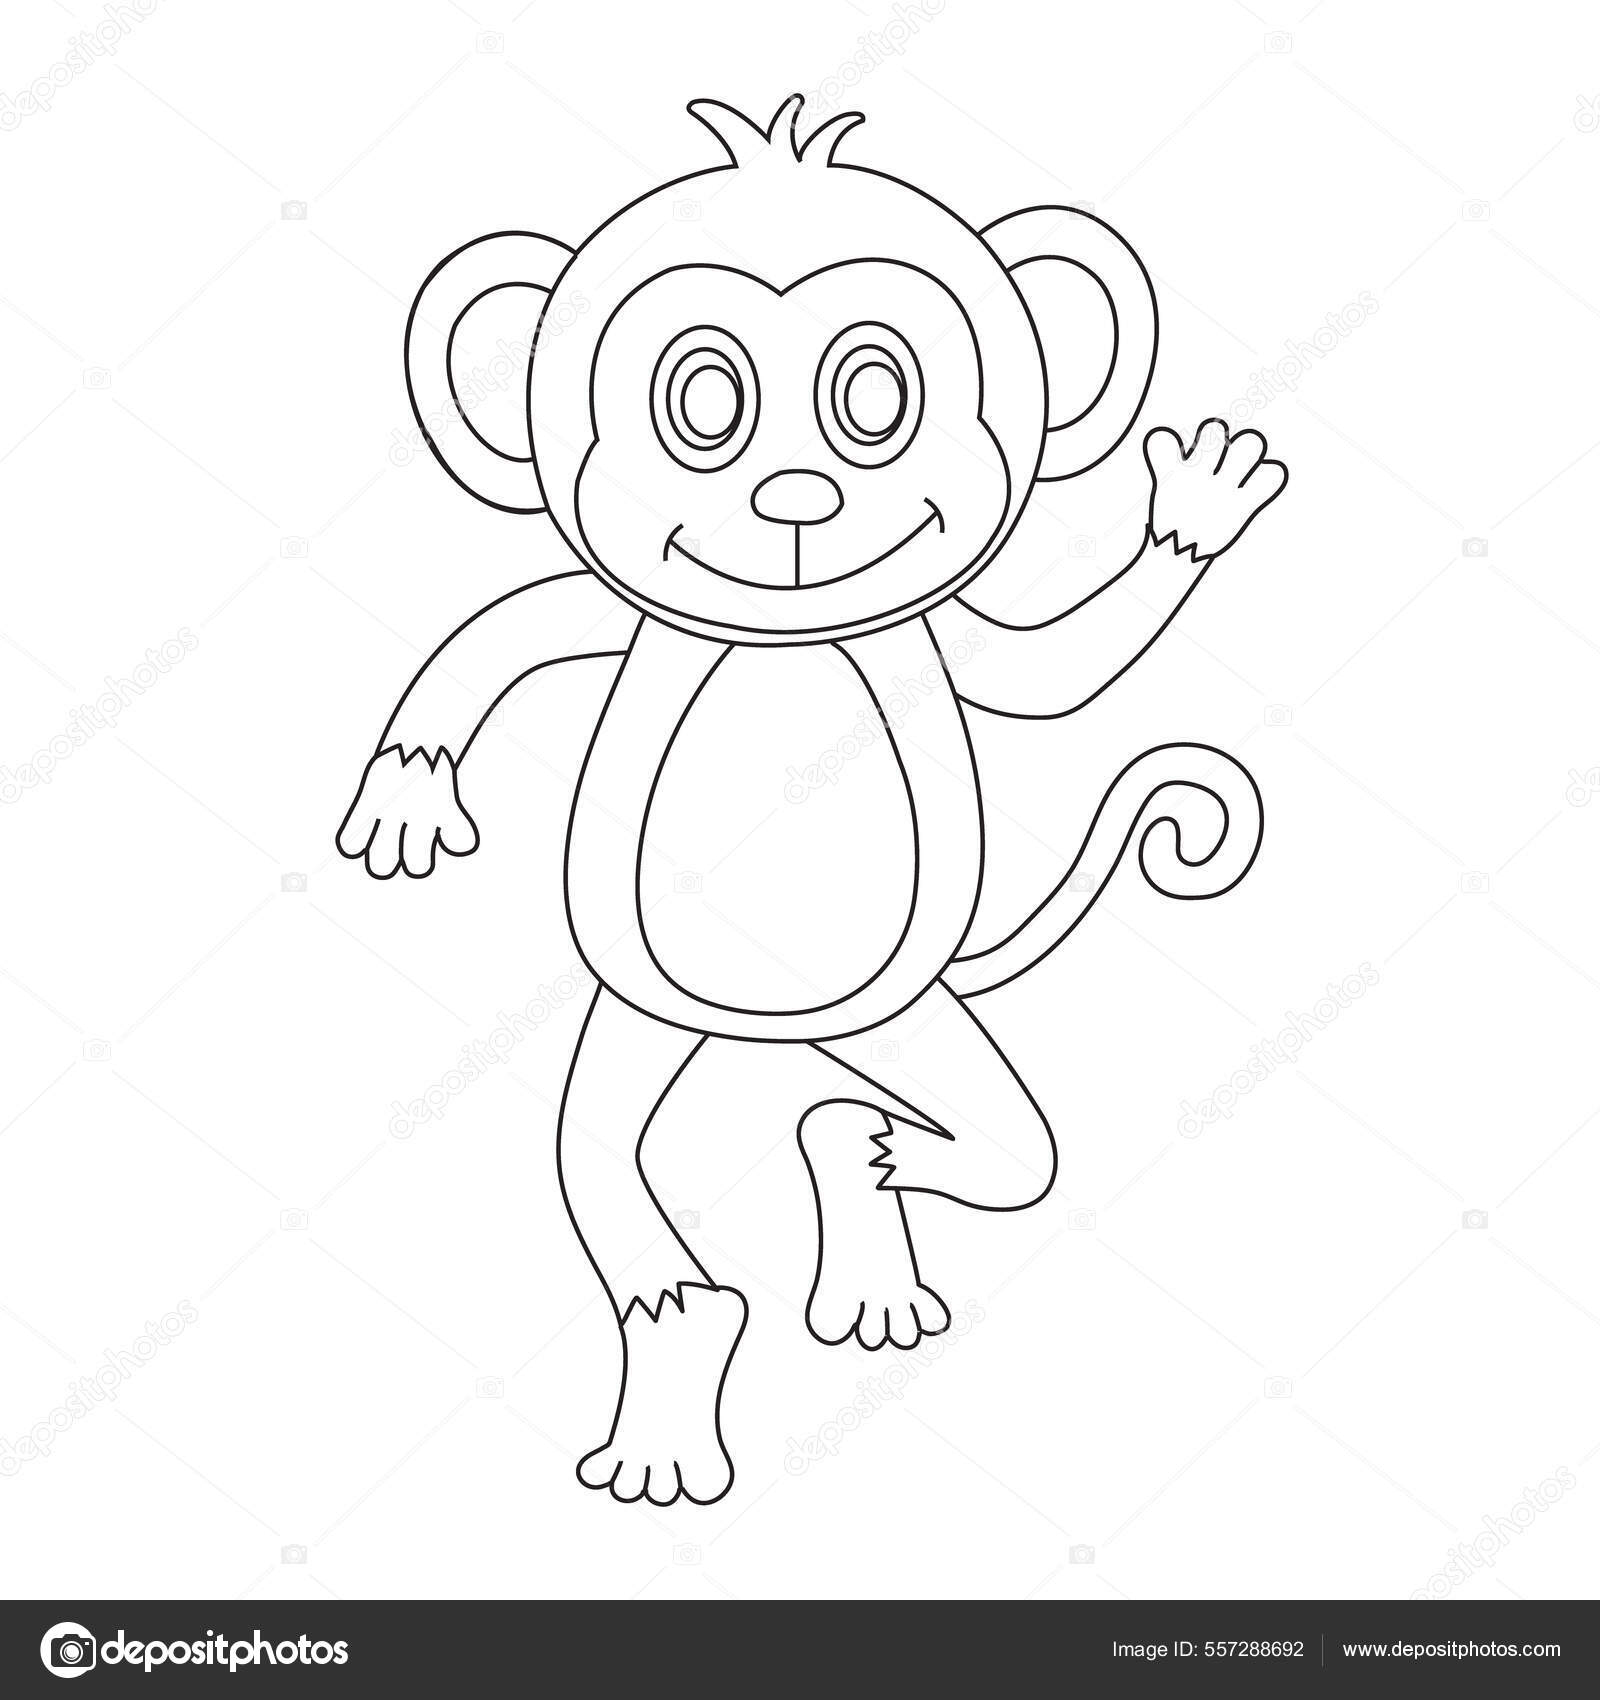 Desenhos para Colorir de Animais Macaco  Páginas de colorir com animais,  Páginas para colorir, Animais para colorir